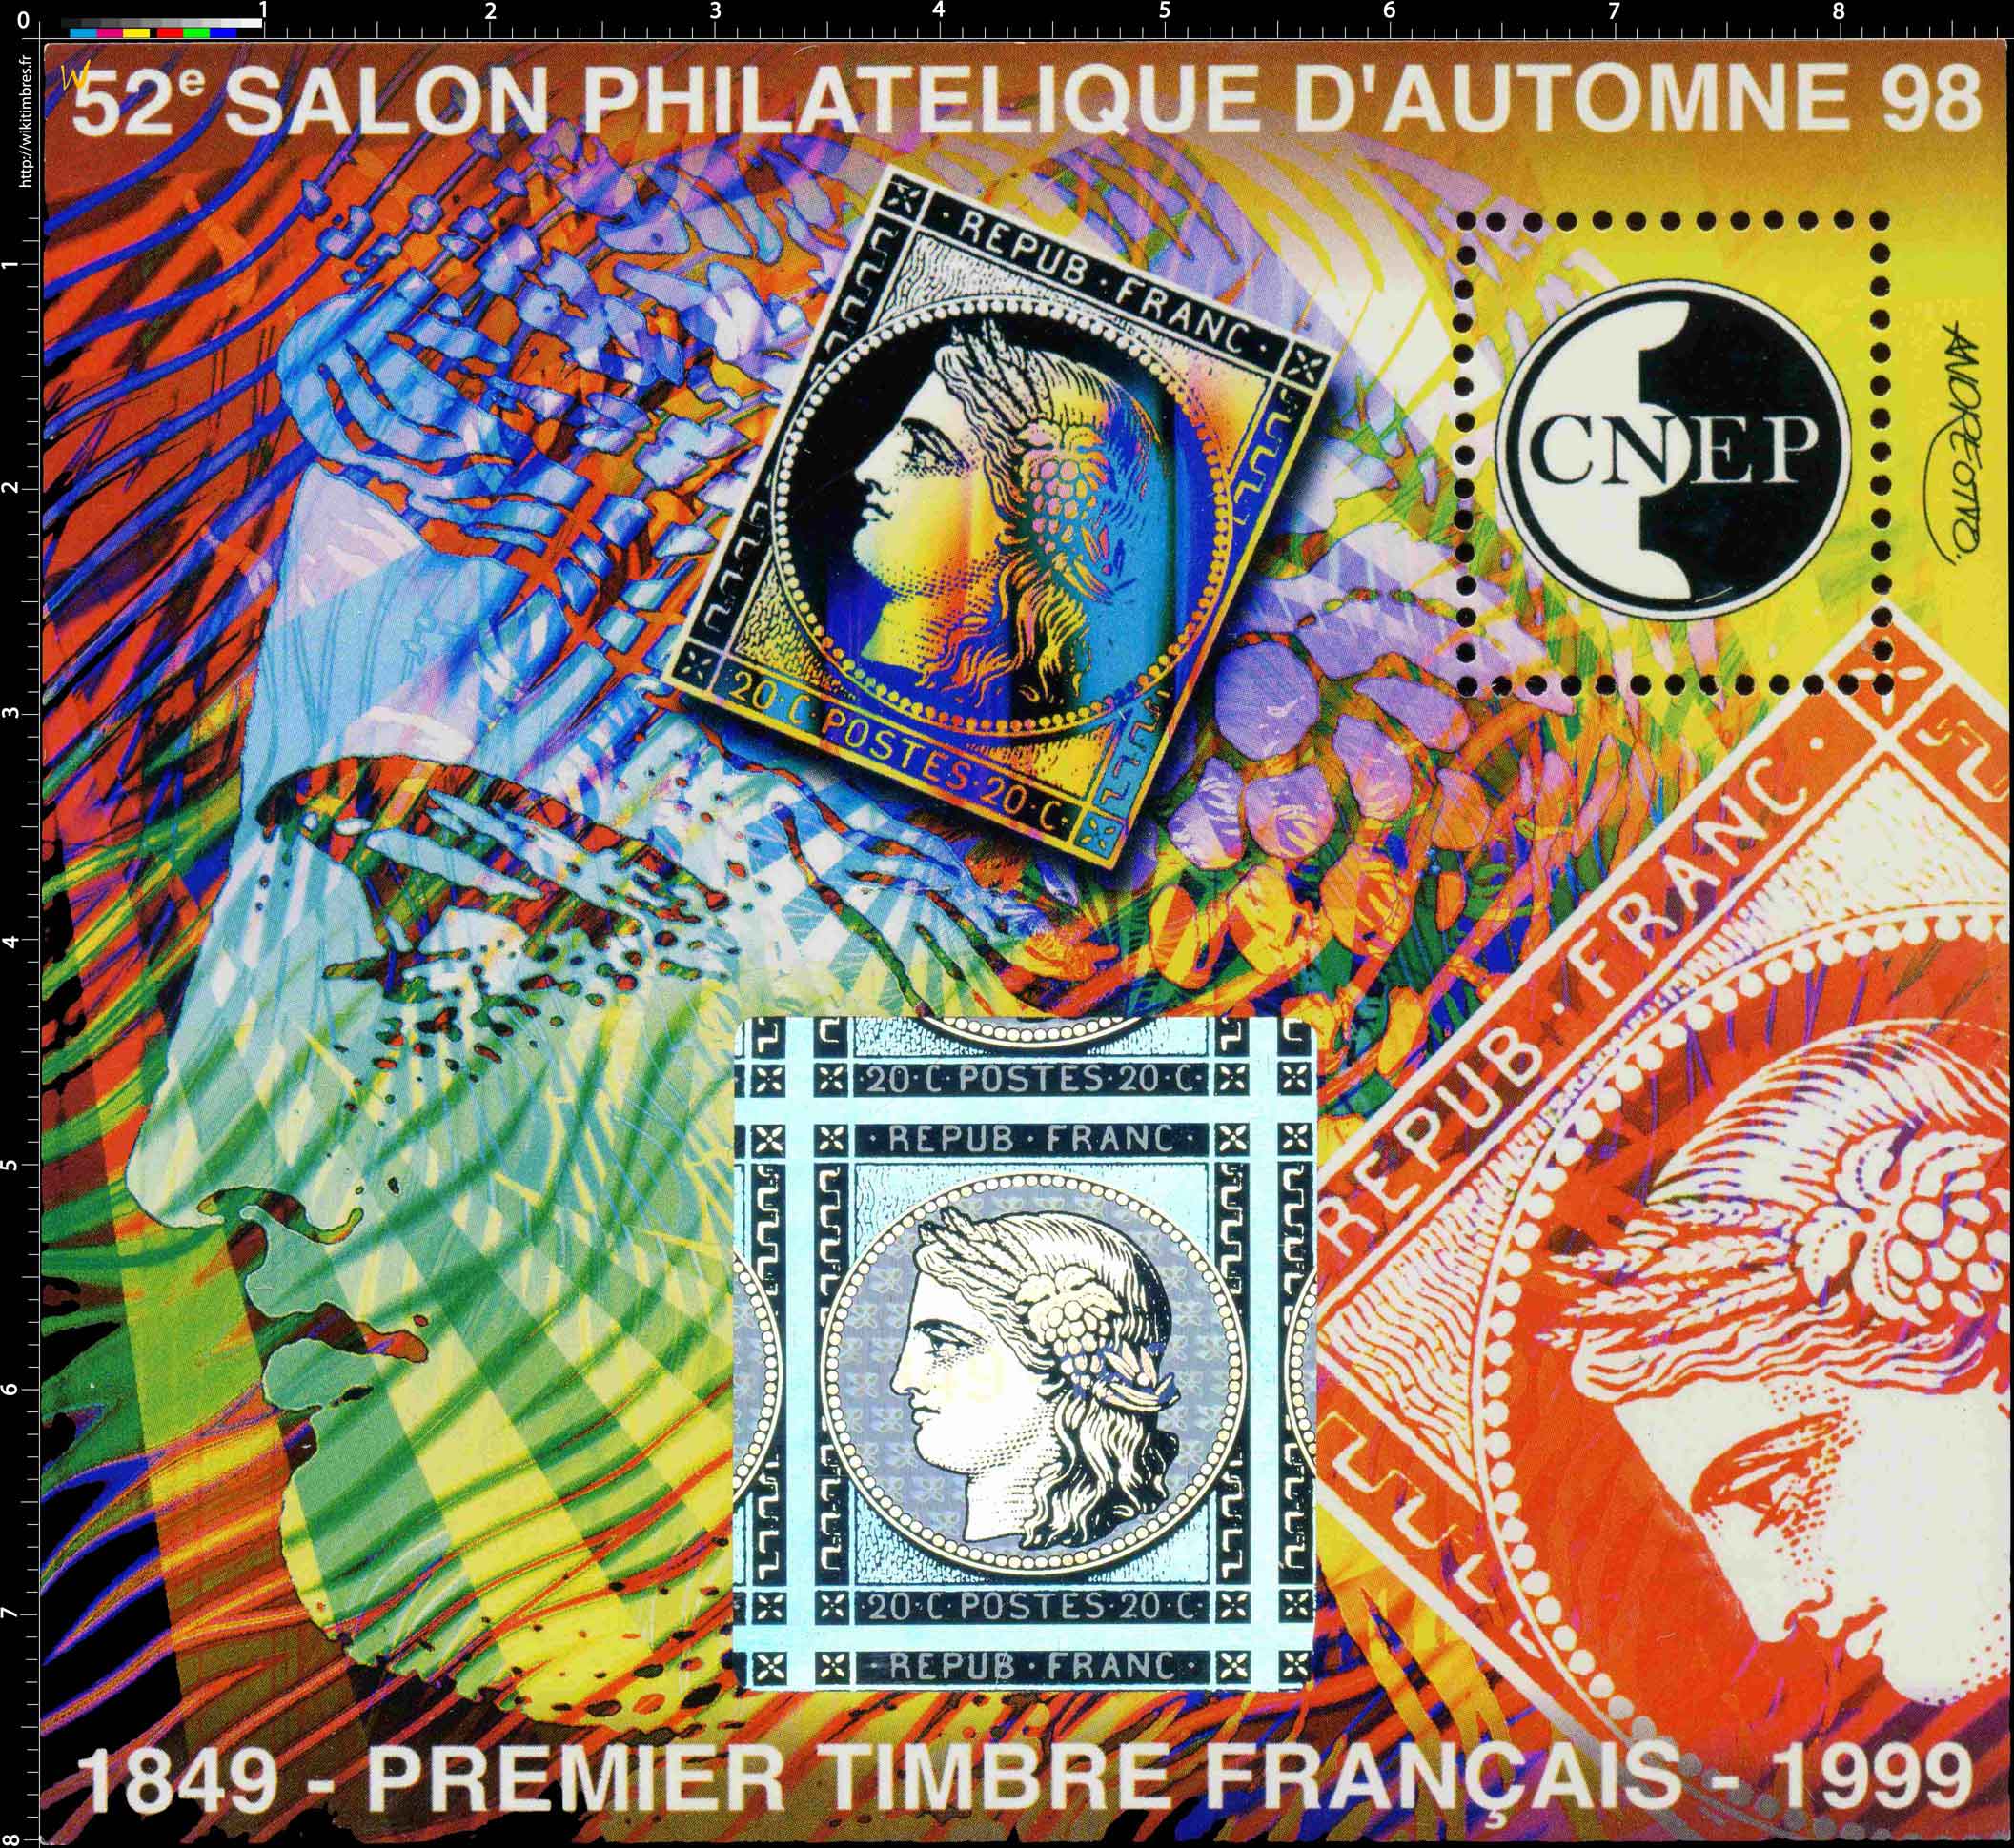 97 52e Salon philatélique d'automne Paris CNEP